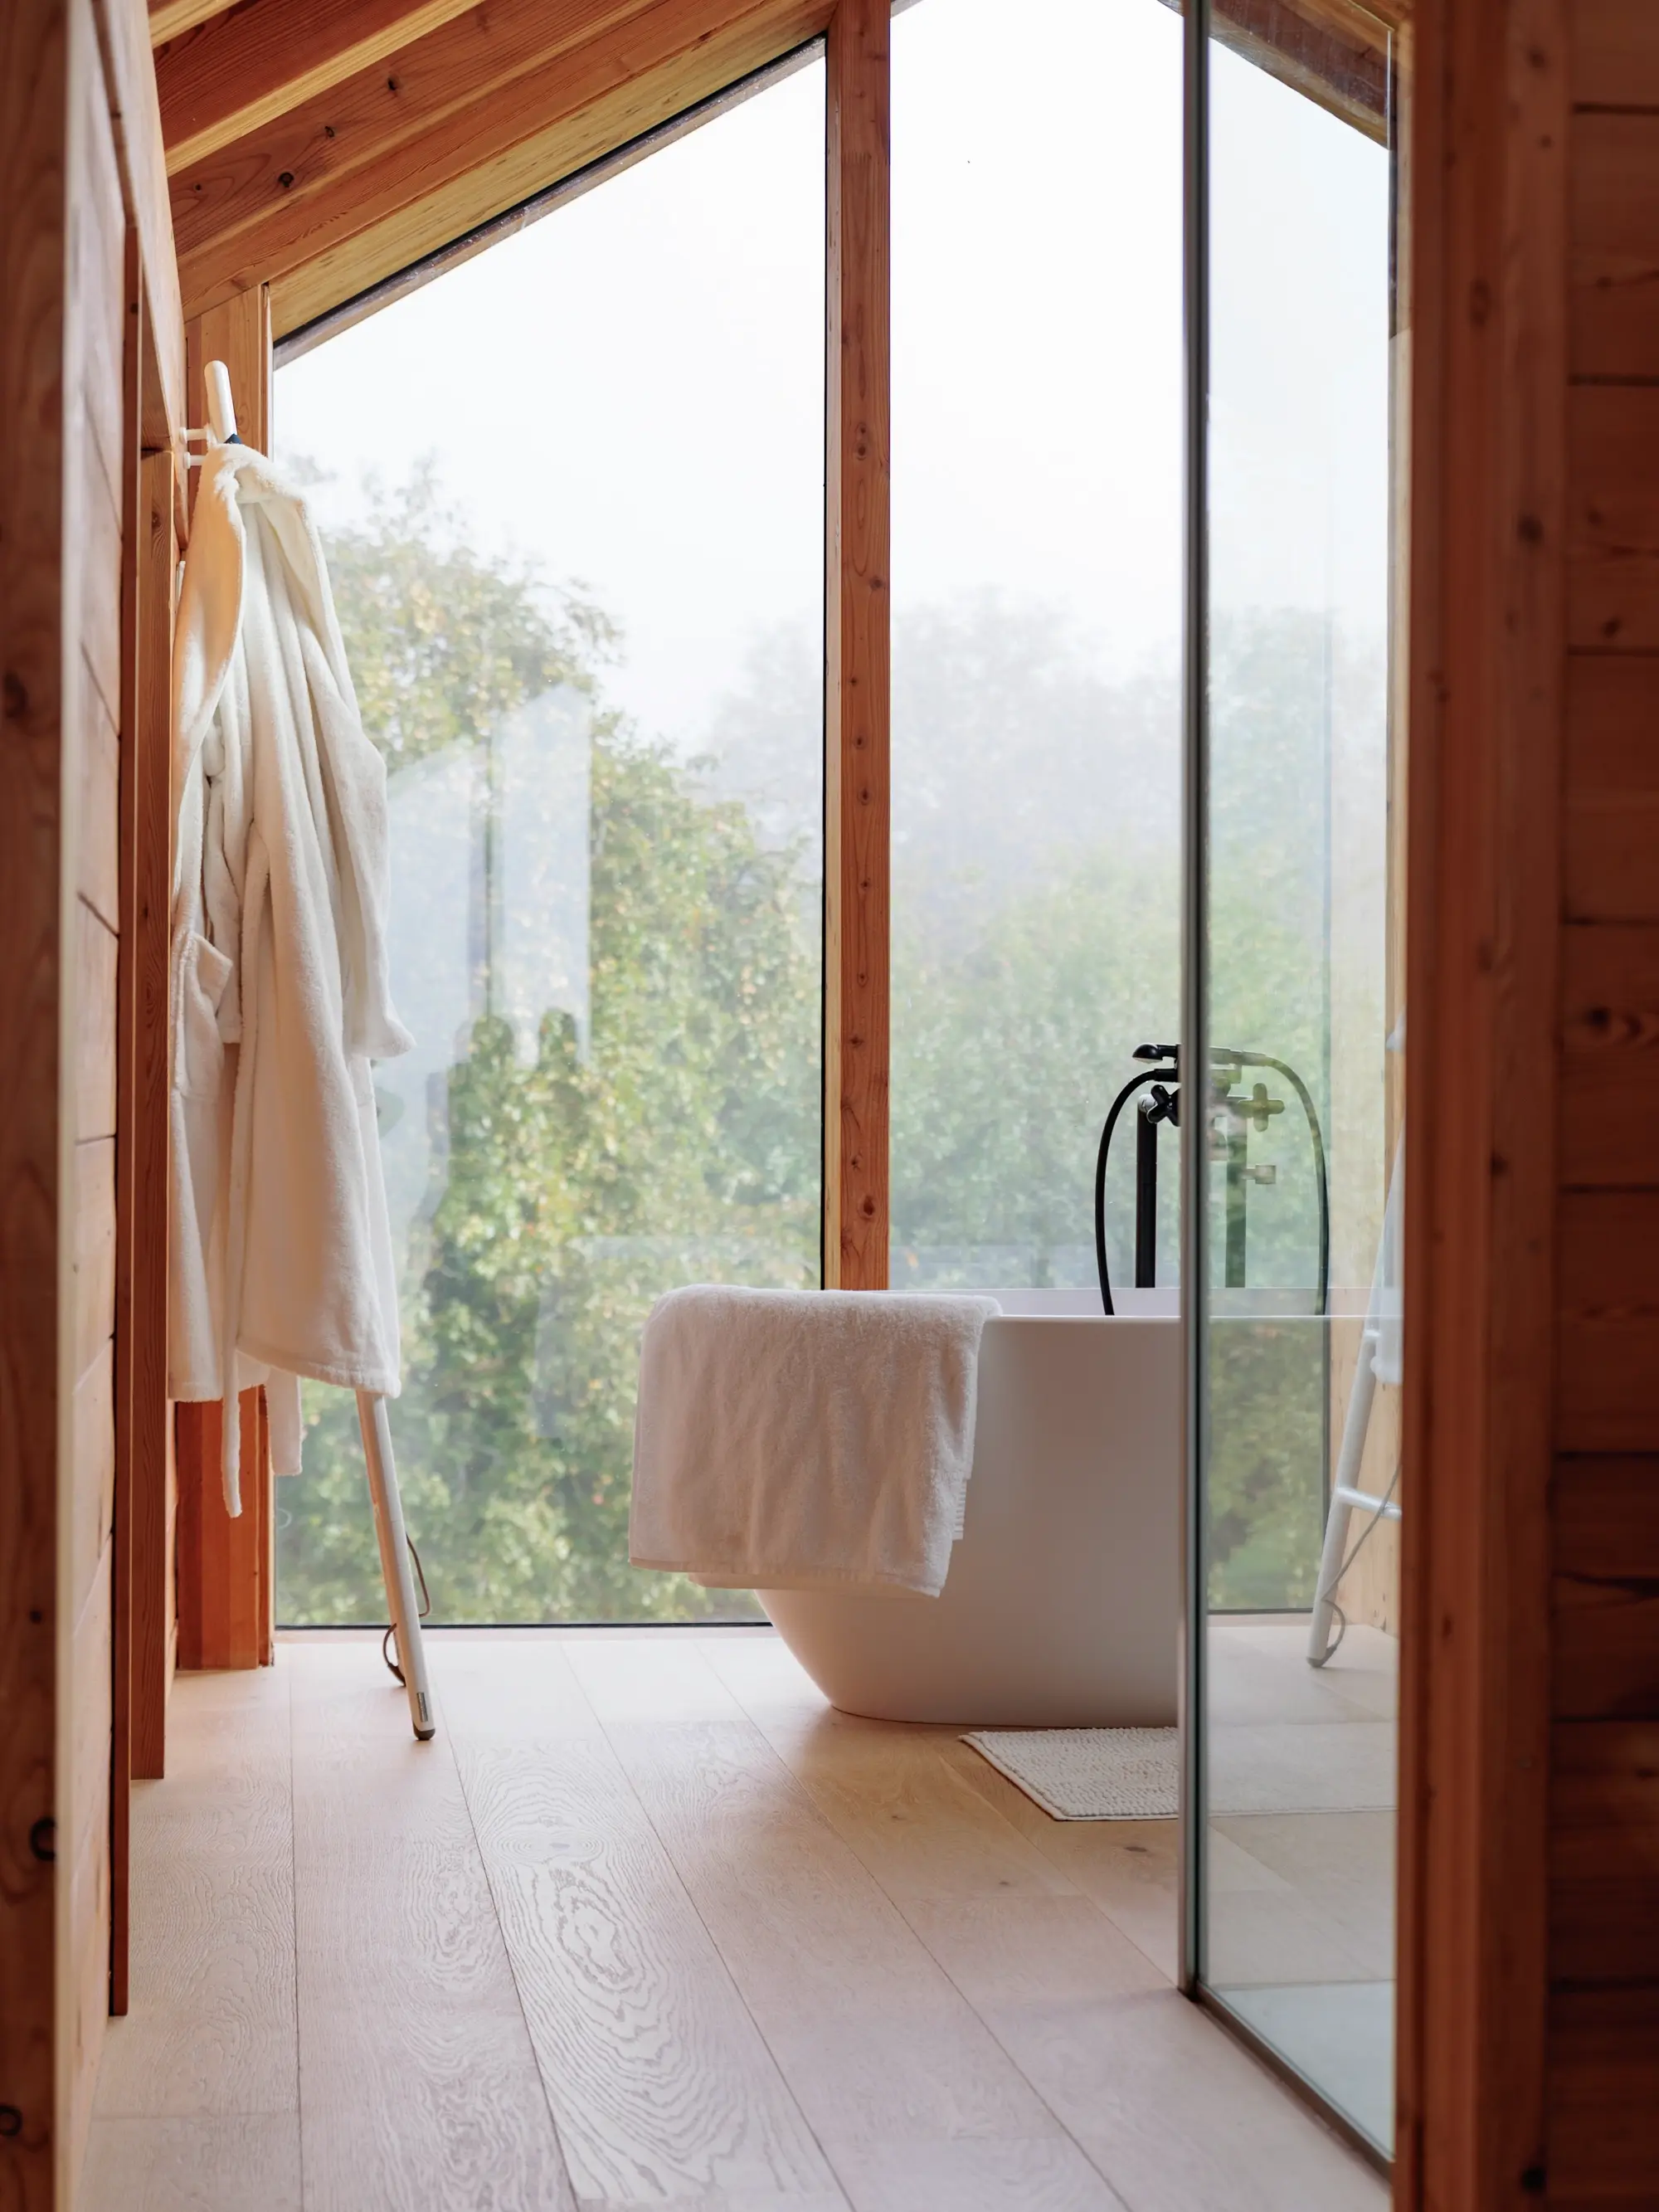 Une ventilation adéquate est essentielle dans des pièces comme la salle de bain, particulièrement sensible à l’humidité.